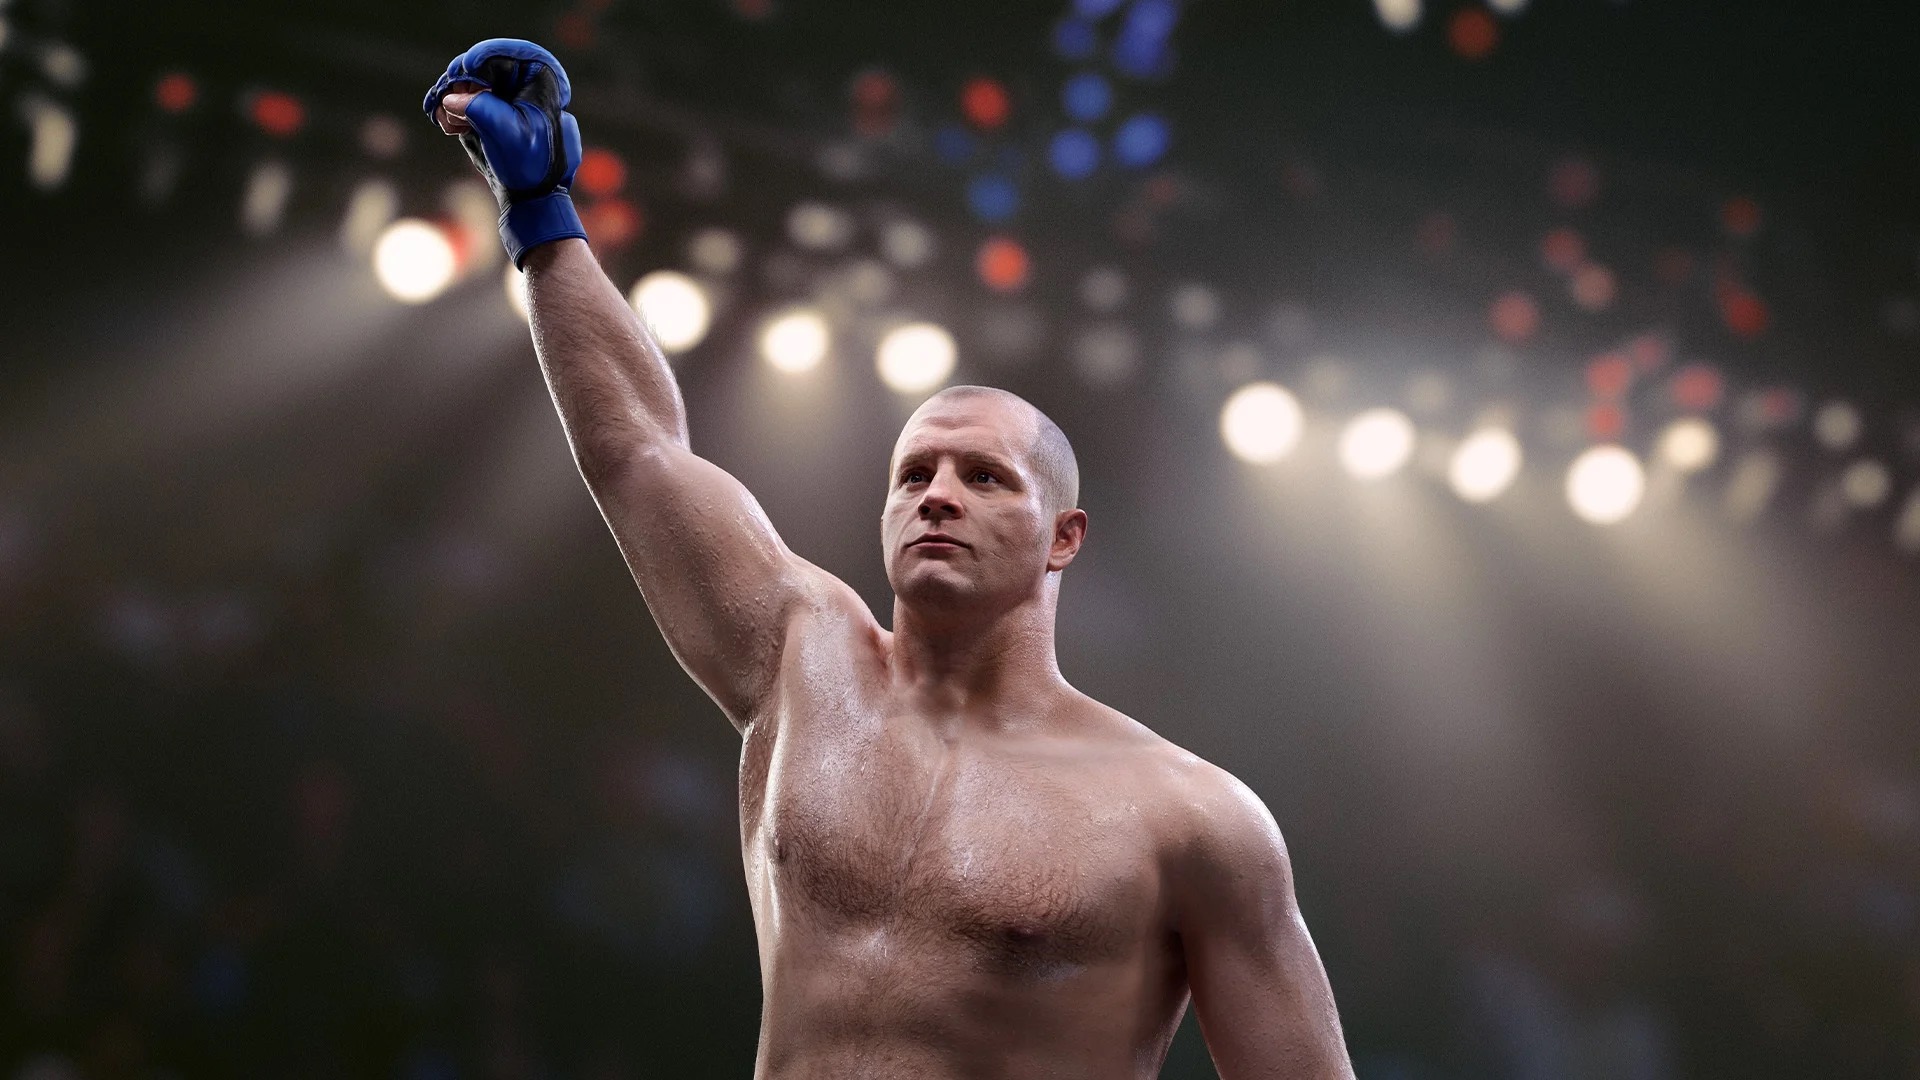 Показали первый геймплей единоборств нового поколения - UFC 5, релиз в октябре: с сайта NEWXBOXONE.RU